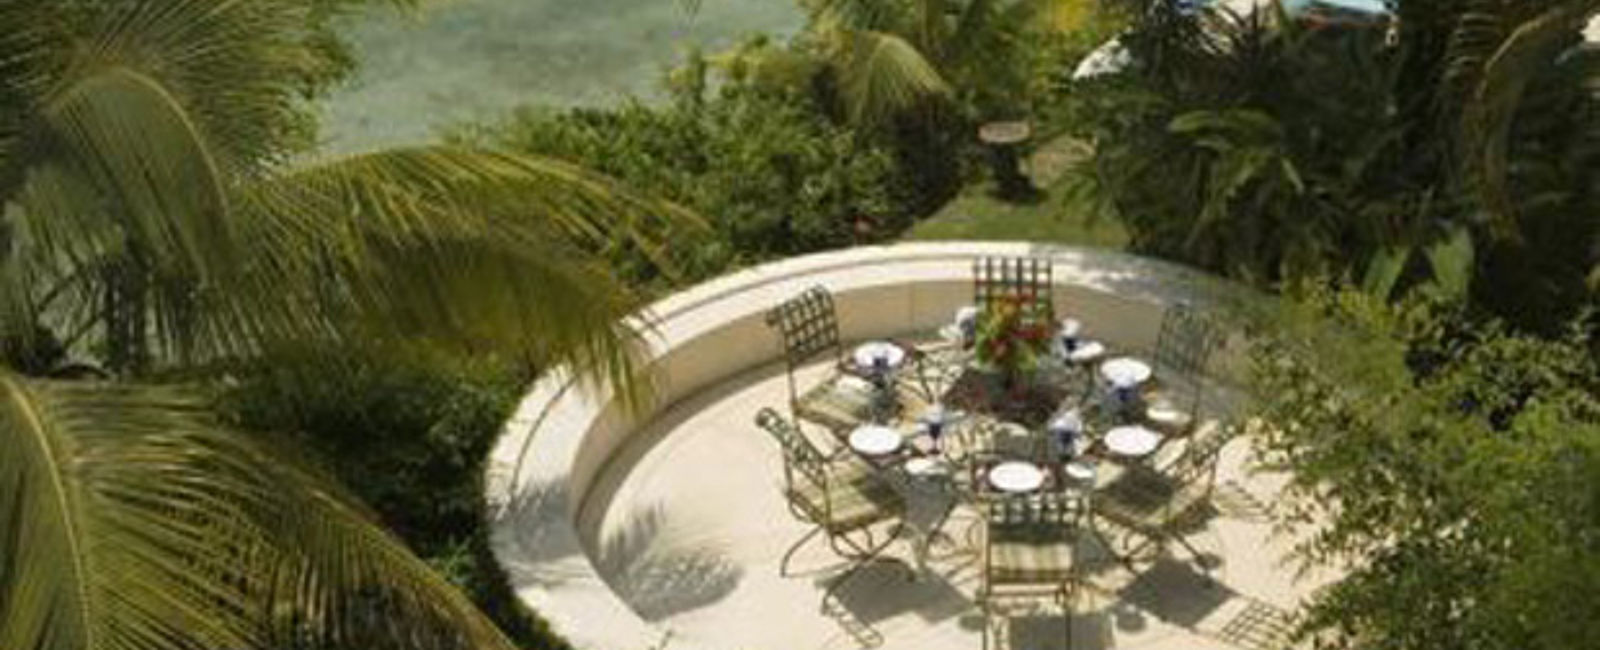 HOTEL TIPPS
 Rio Chico Private Estate 
 Exquisites Strandhotel mit unglaublichem Meerblick 